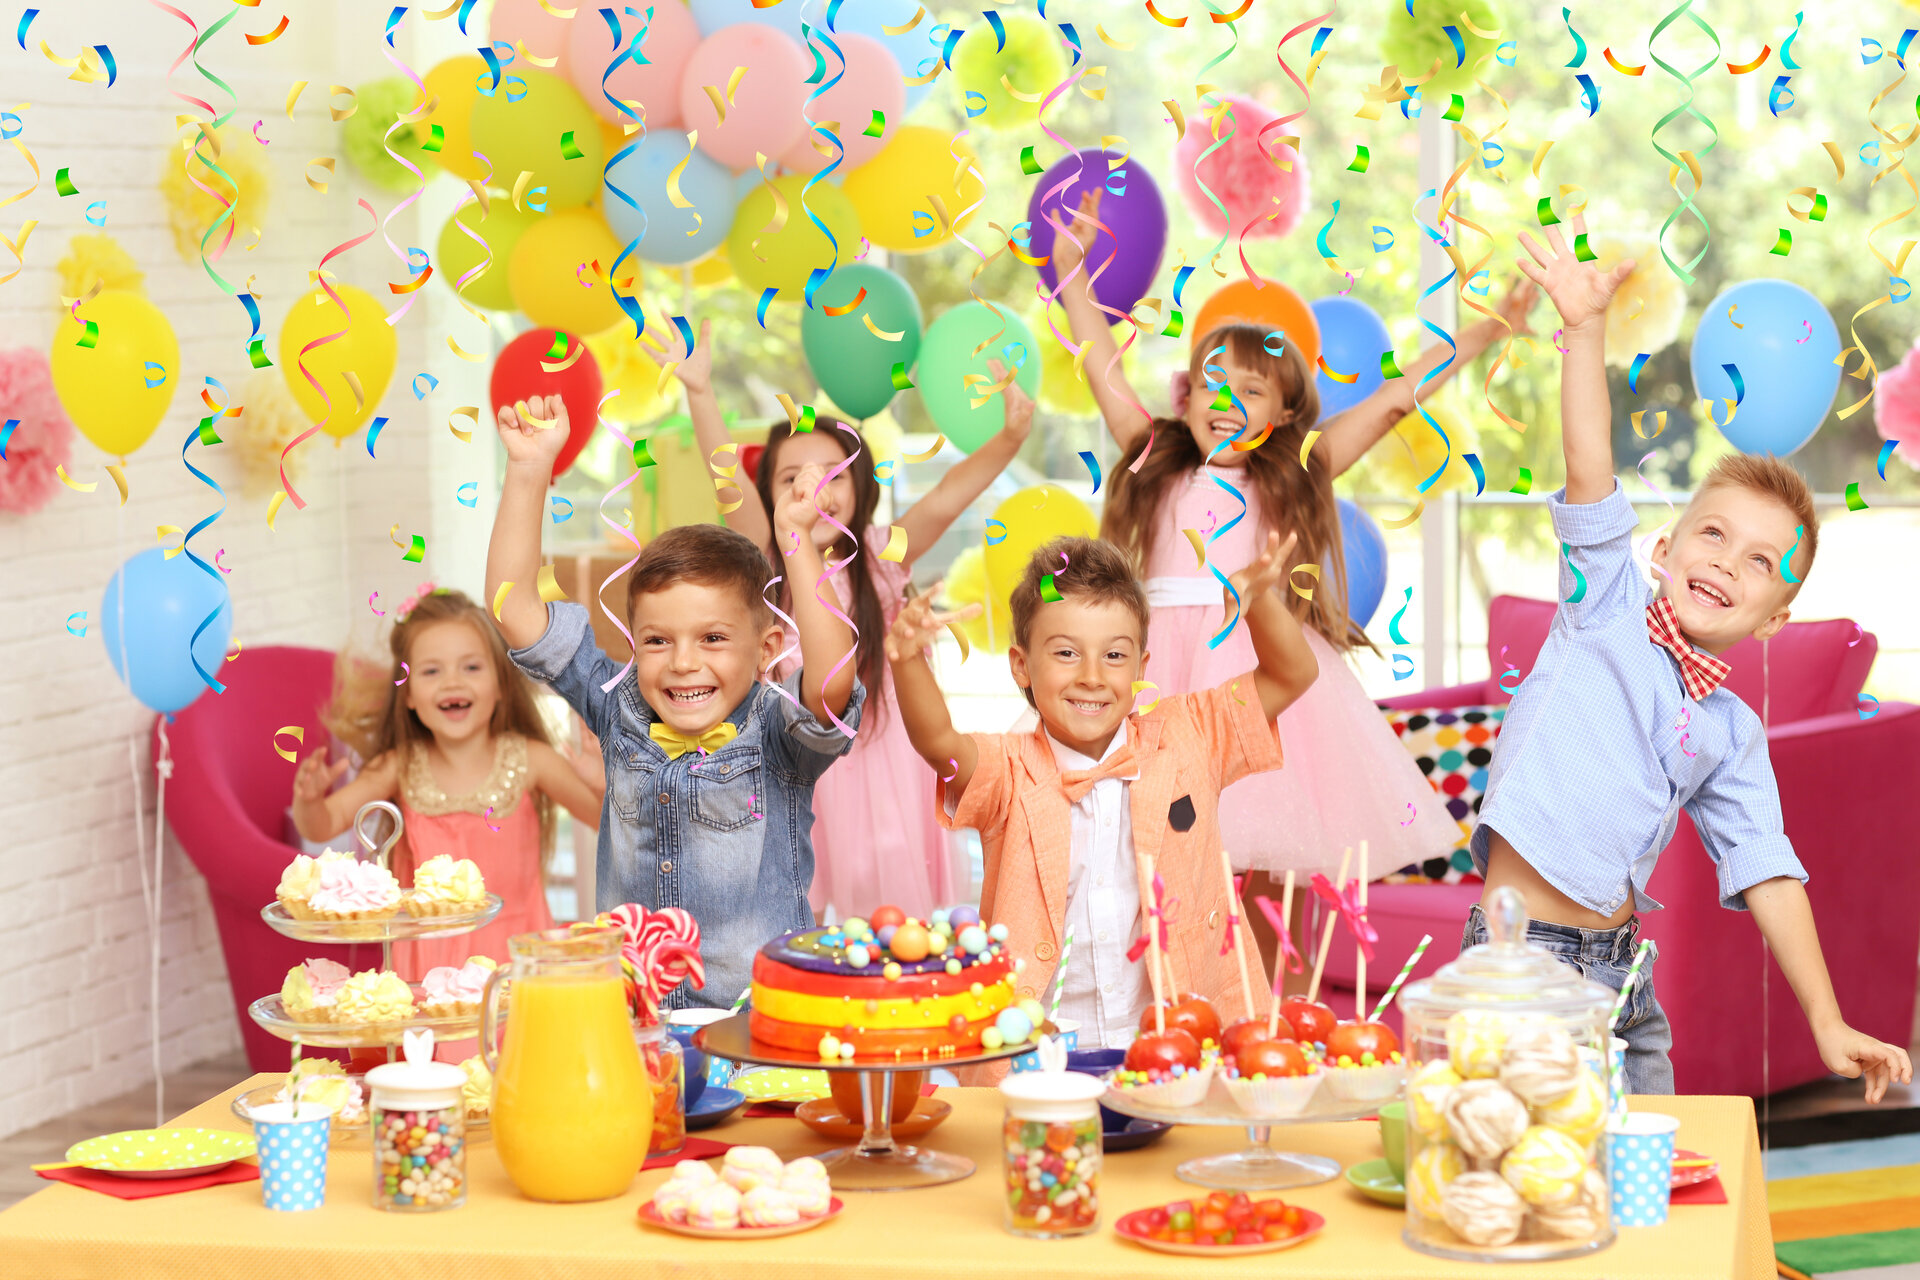 Partyservice für Kindergeburtstag – so wird die Geburtstagsfeier perfekt